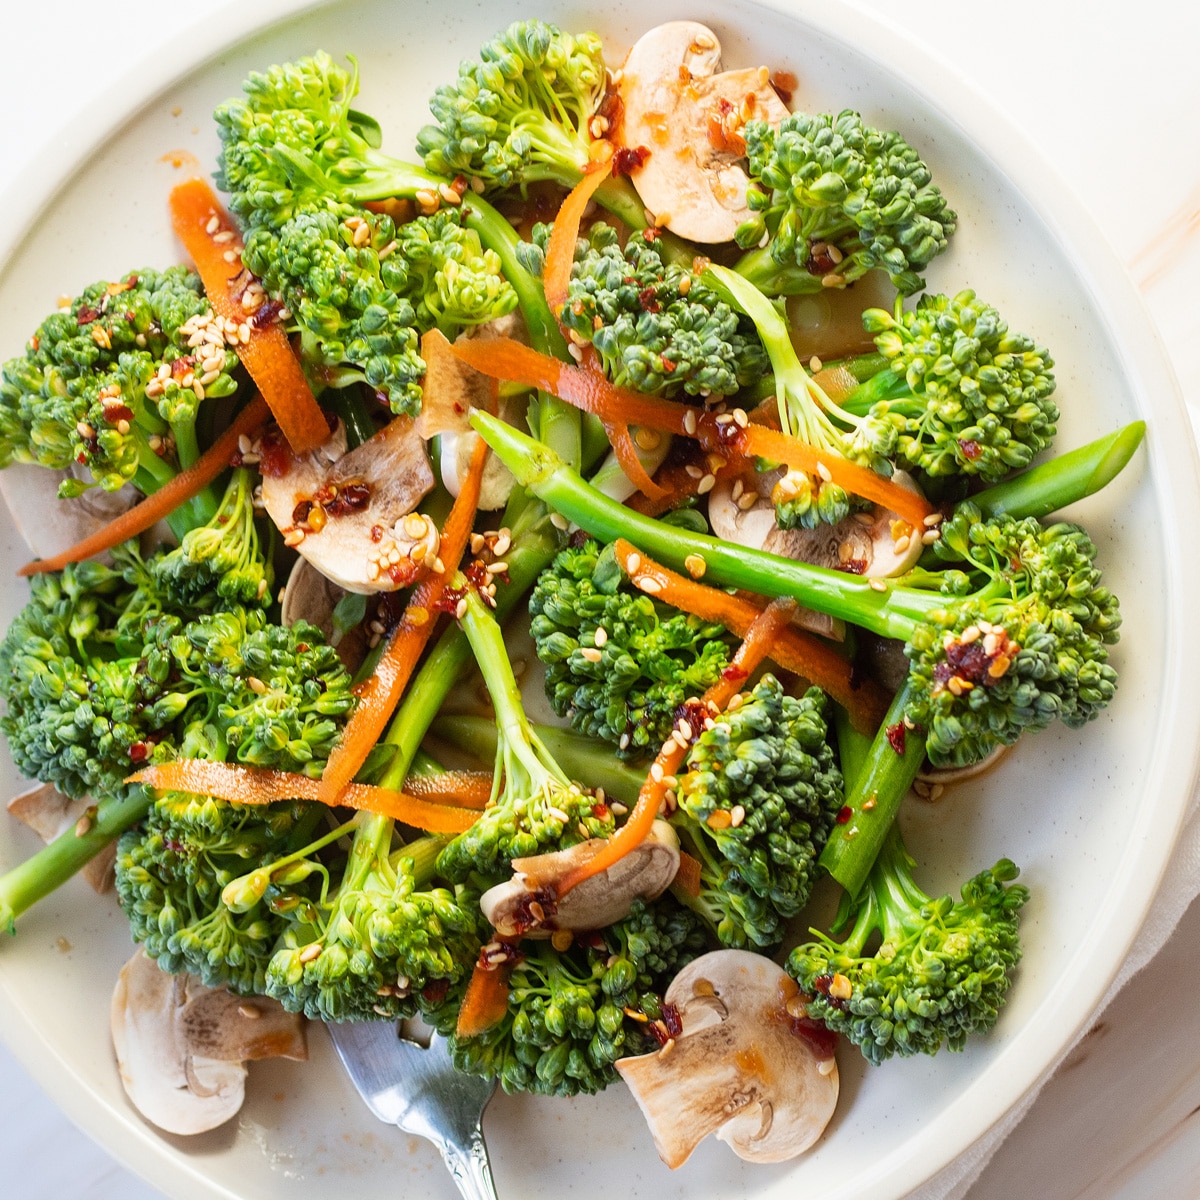 Insalata di broccoli su piatto bianco con funghi, carote rasate e condimento asiatico leggero.